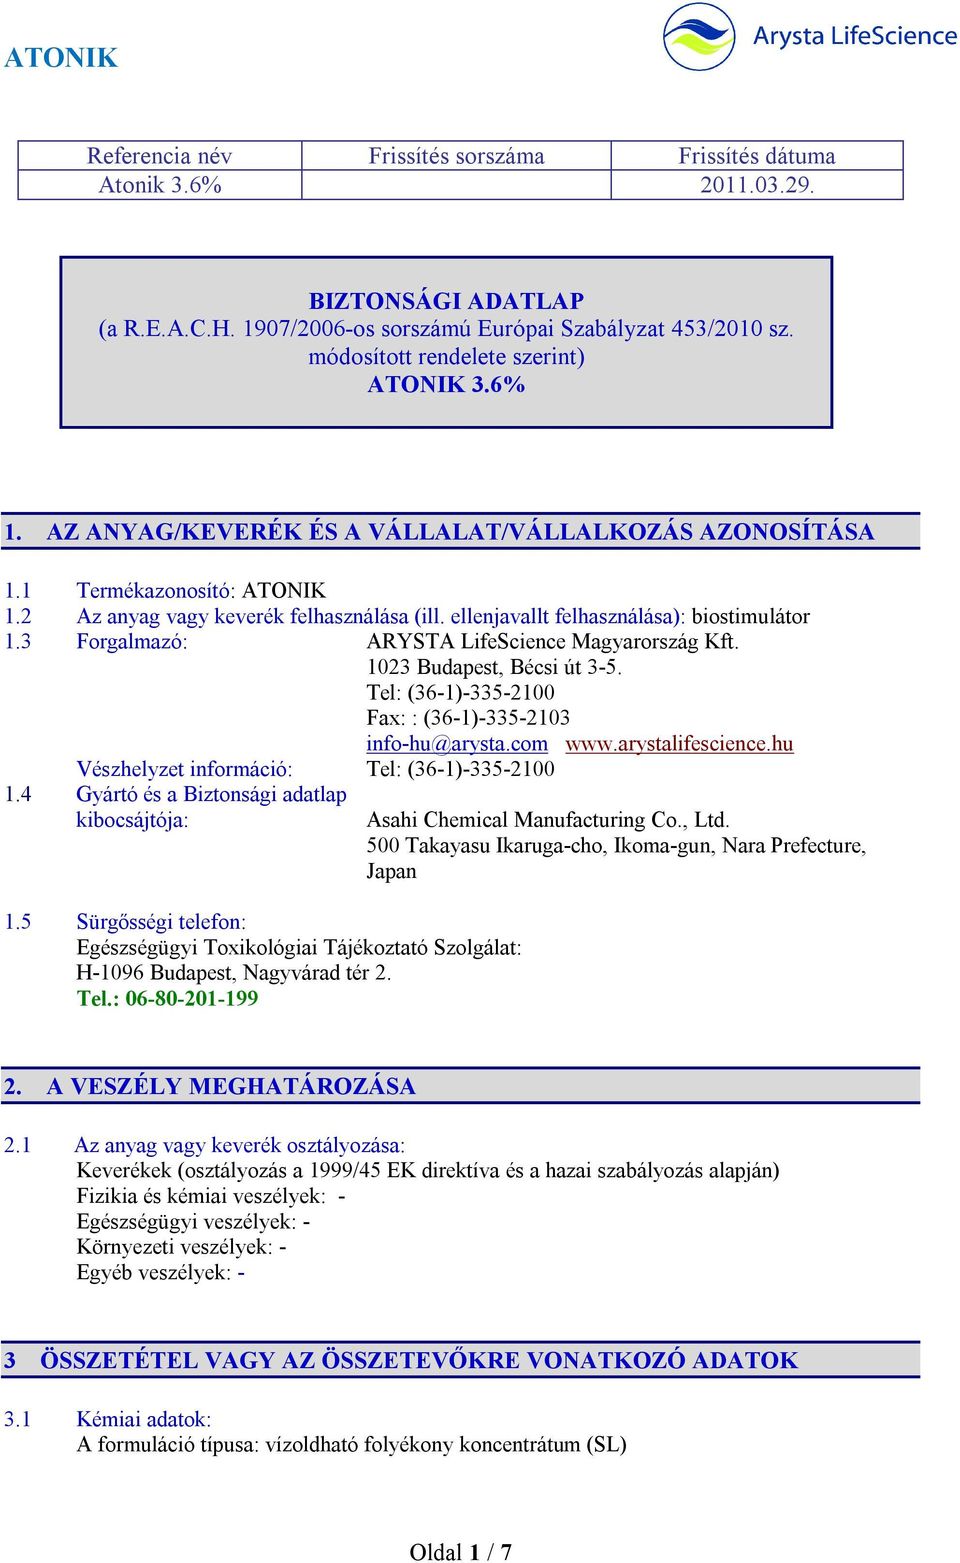 ellenjavallt felhasználása): biostimulátor 1.3 Forgalmazó: ARYSTA LifeScience Magyarország Kft. 1023 Budapest, Bécsi út 3-5. Tel: (36-1)-335-2100 Fax: : (36-1)-335-2103 info-hu@arysta.com www.